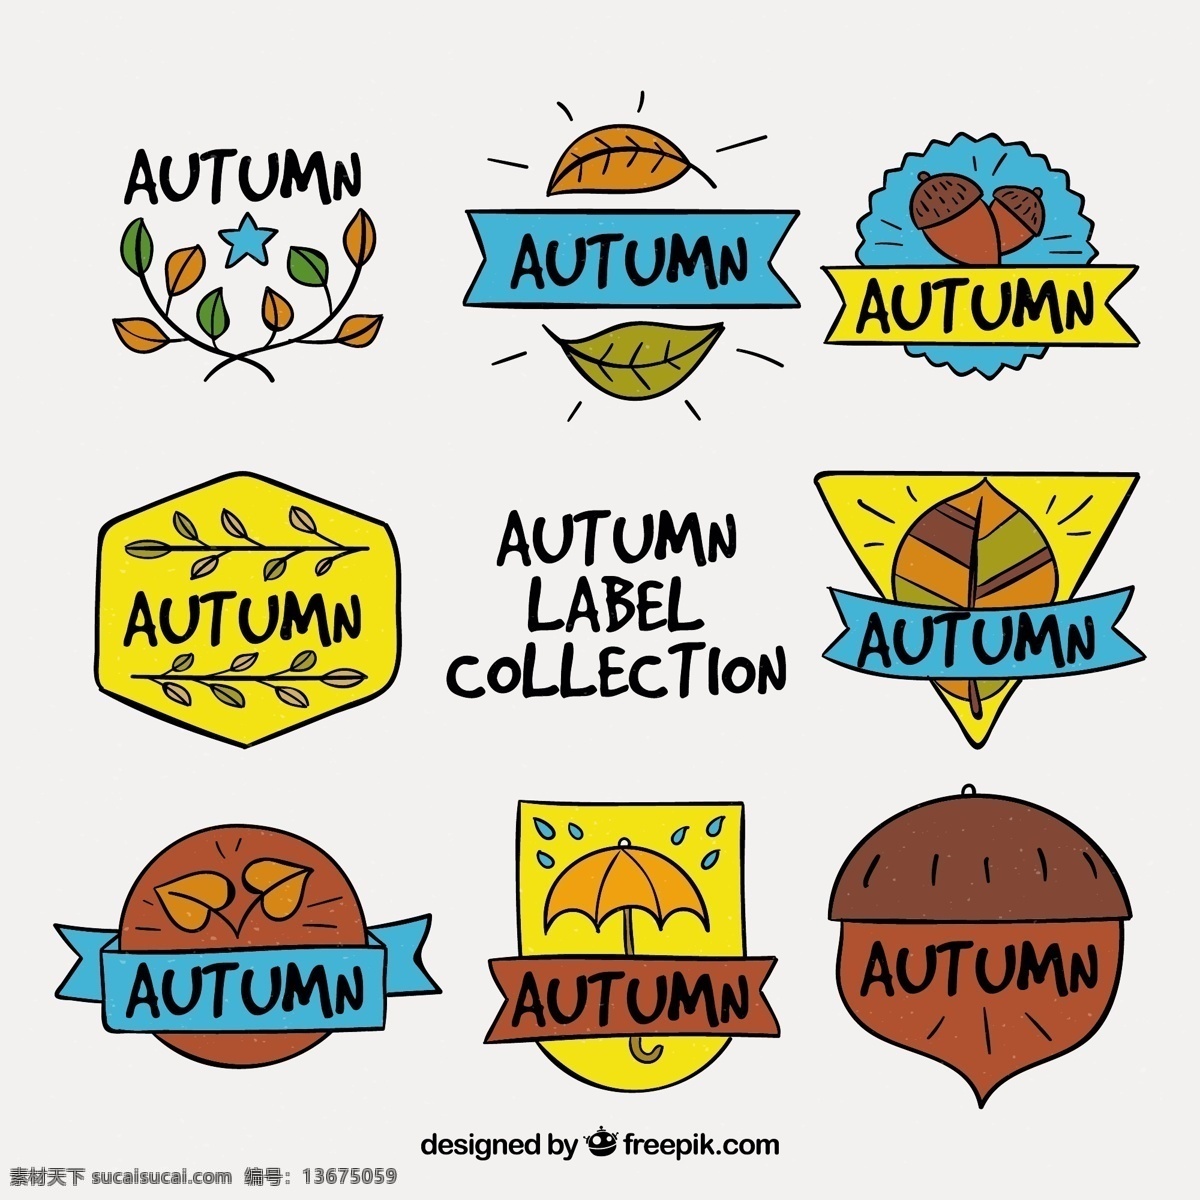 有趣 秋季 徽章 手绘 风格 标签 手 叶 自然 邮票 秋天 树叶 绘画 会徽 符号 酷 分行